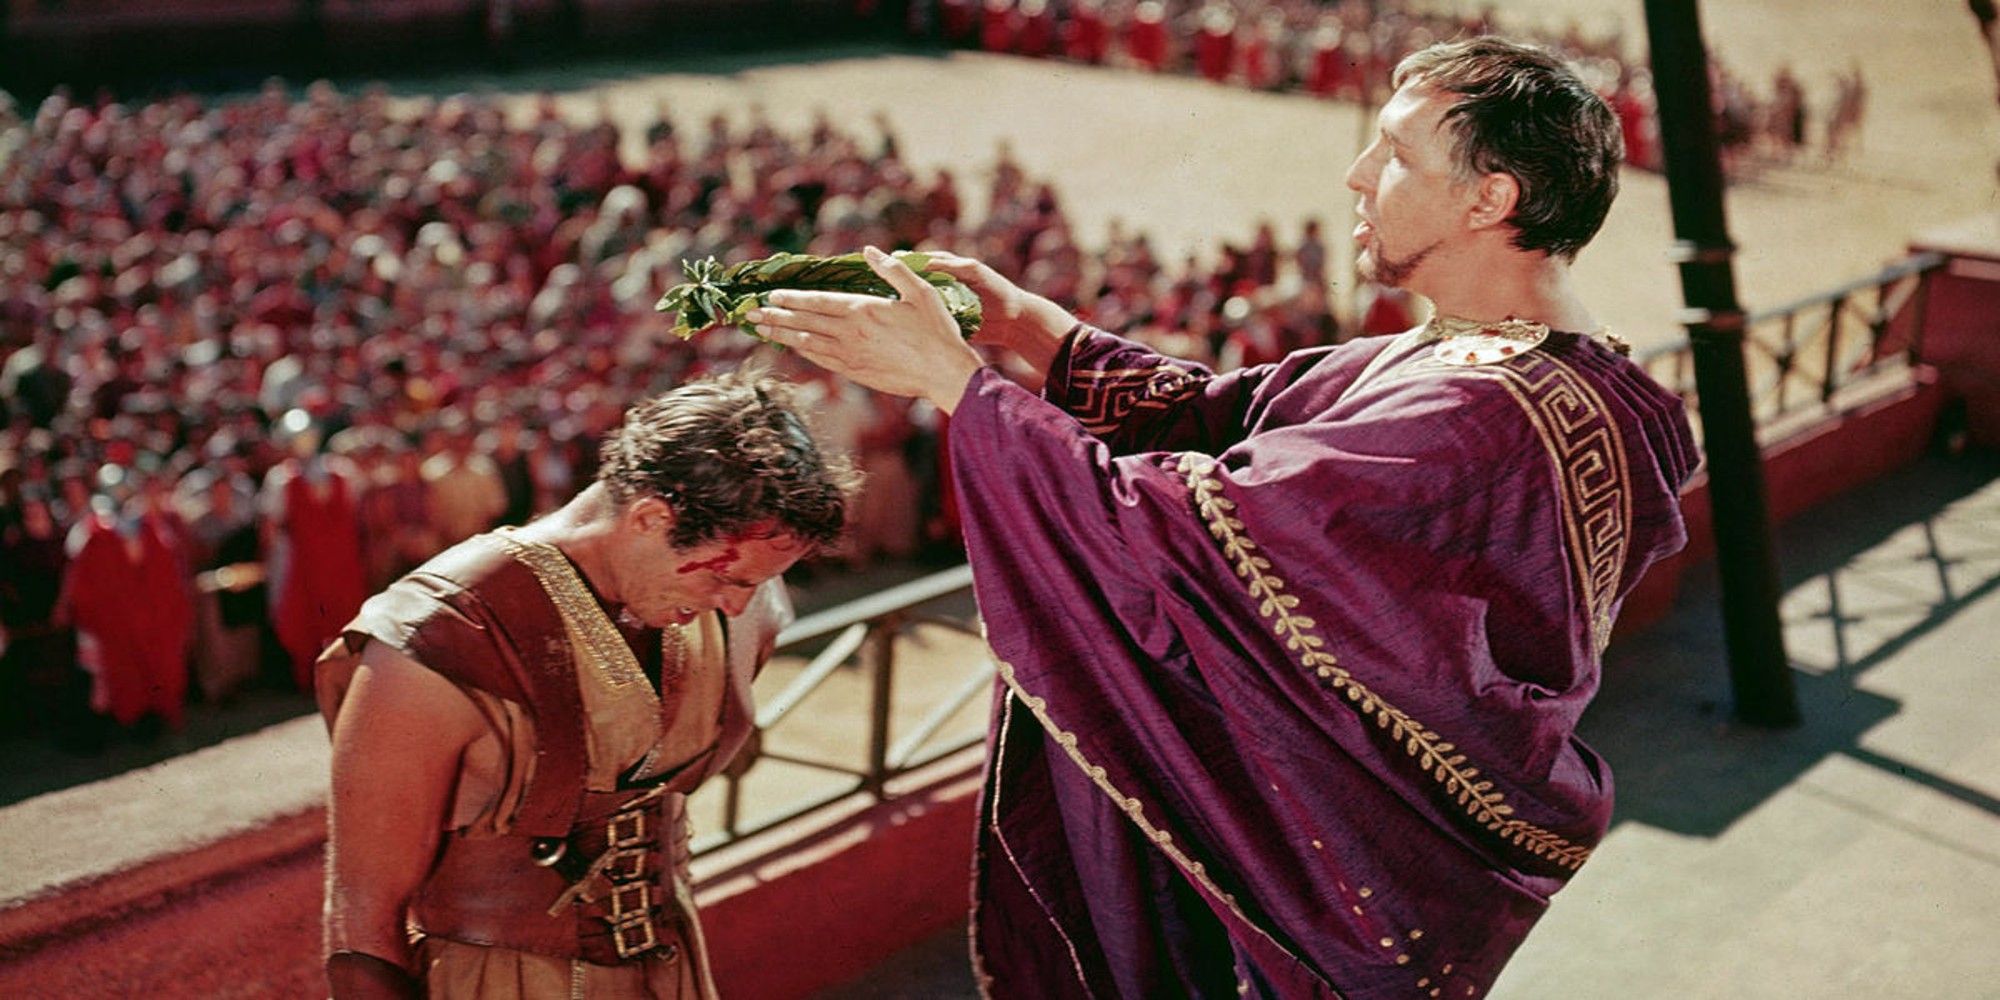 Judah crowned by Pontius Pilate